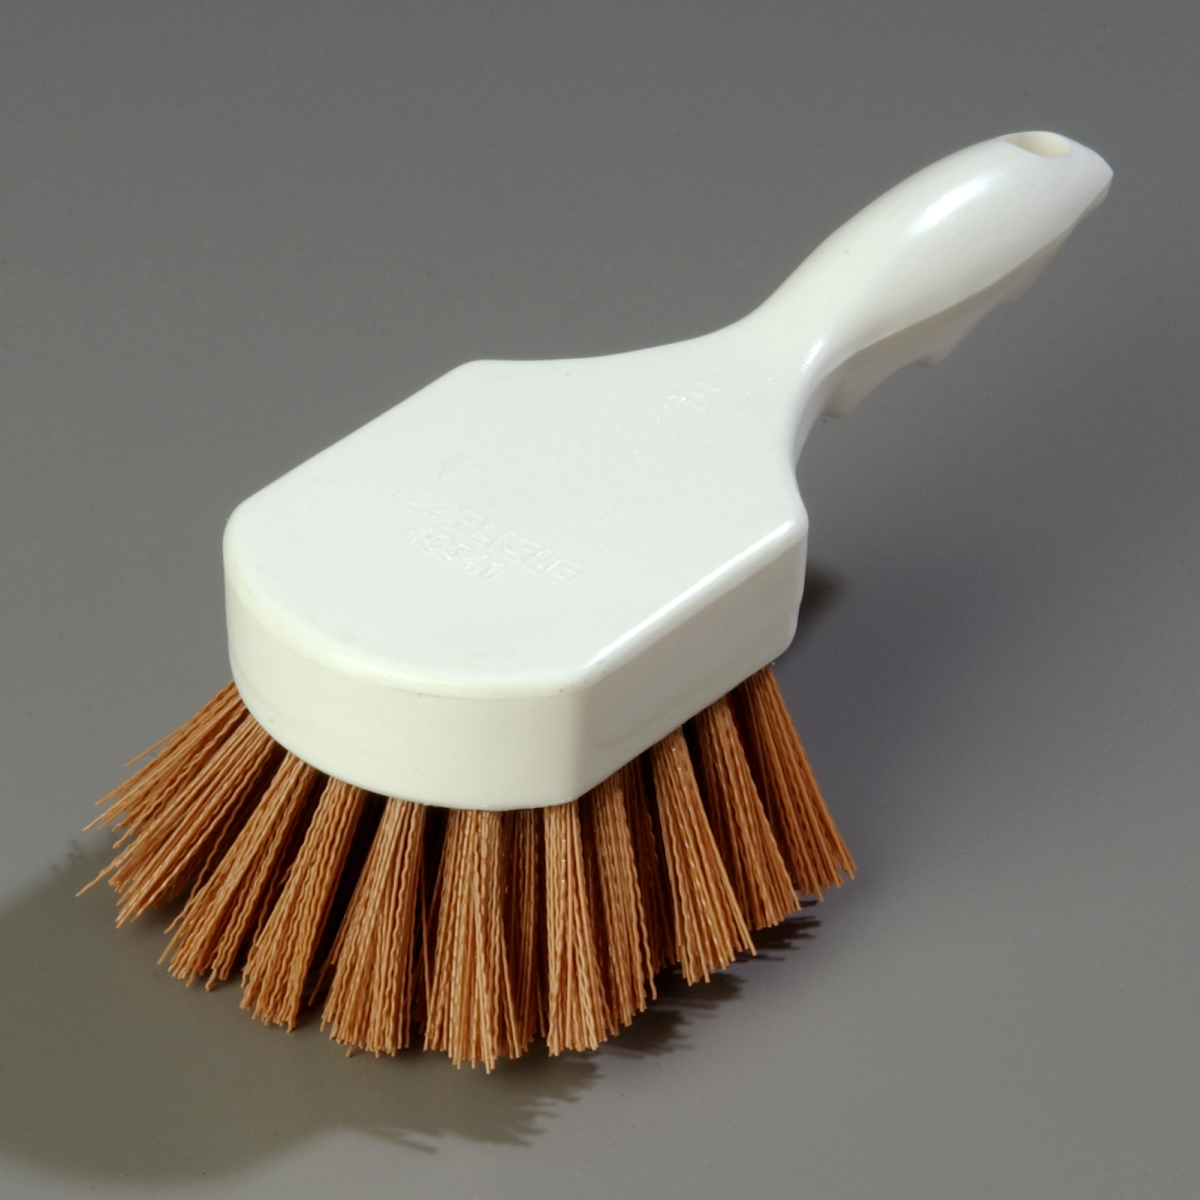 Sparta Utility Scrub Brush with Polyester Bristles 8 x 3 - Tan